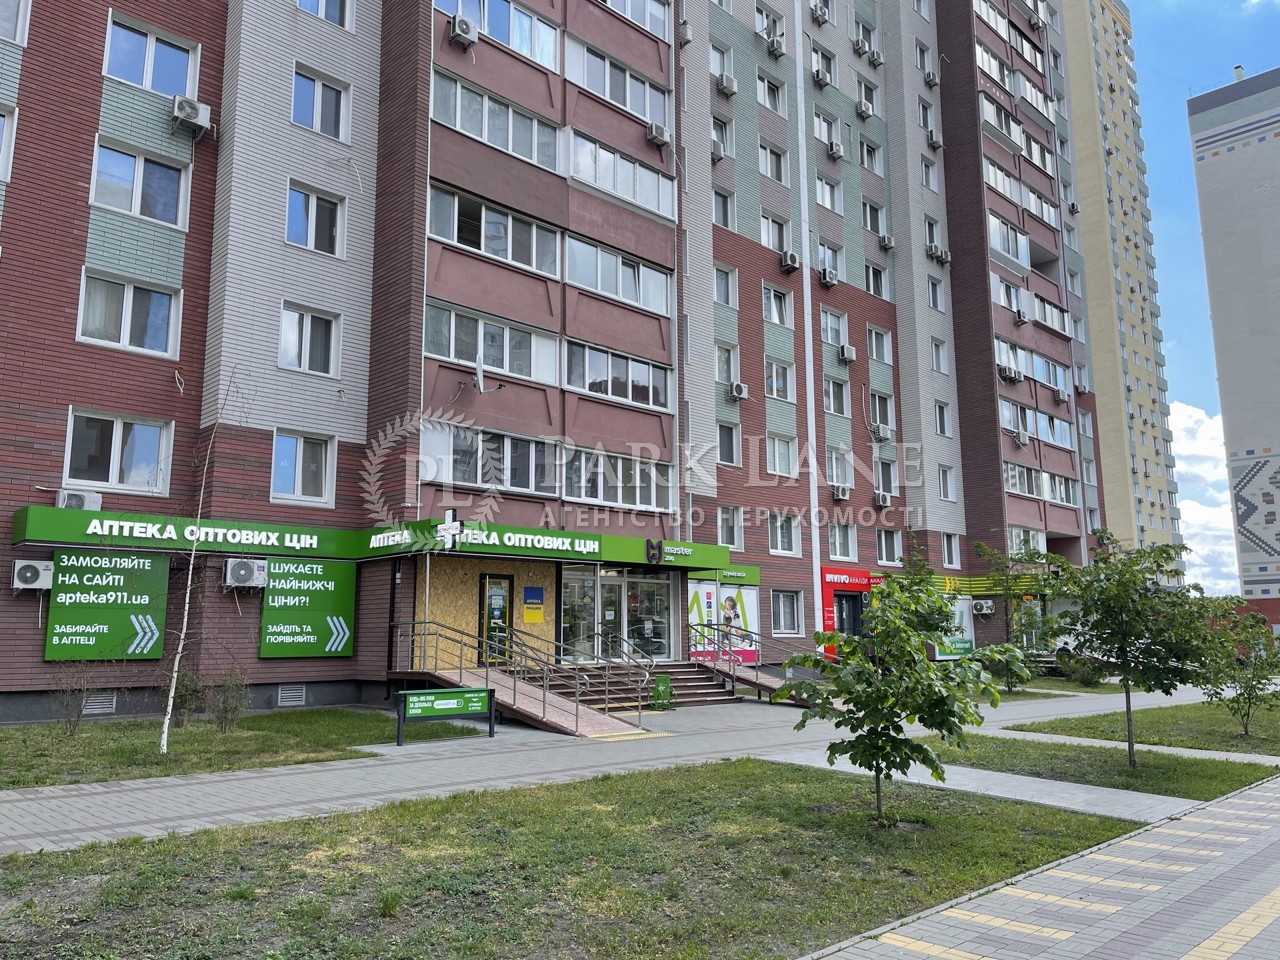  Нежилое помещение, ул. Софии Русовой, Киев, J-33493 - Фото 4